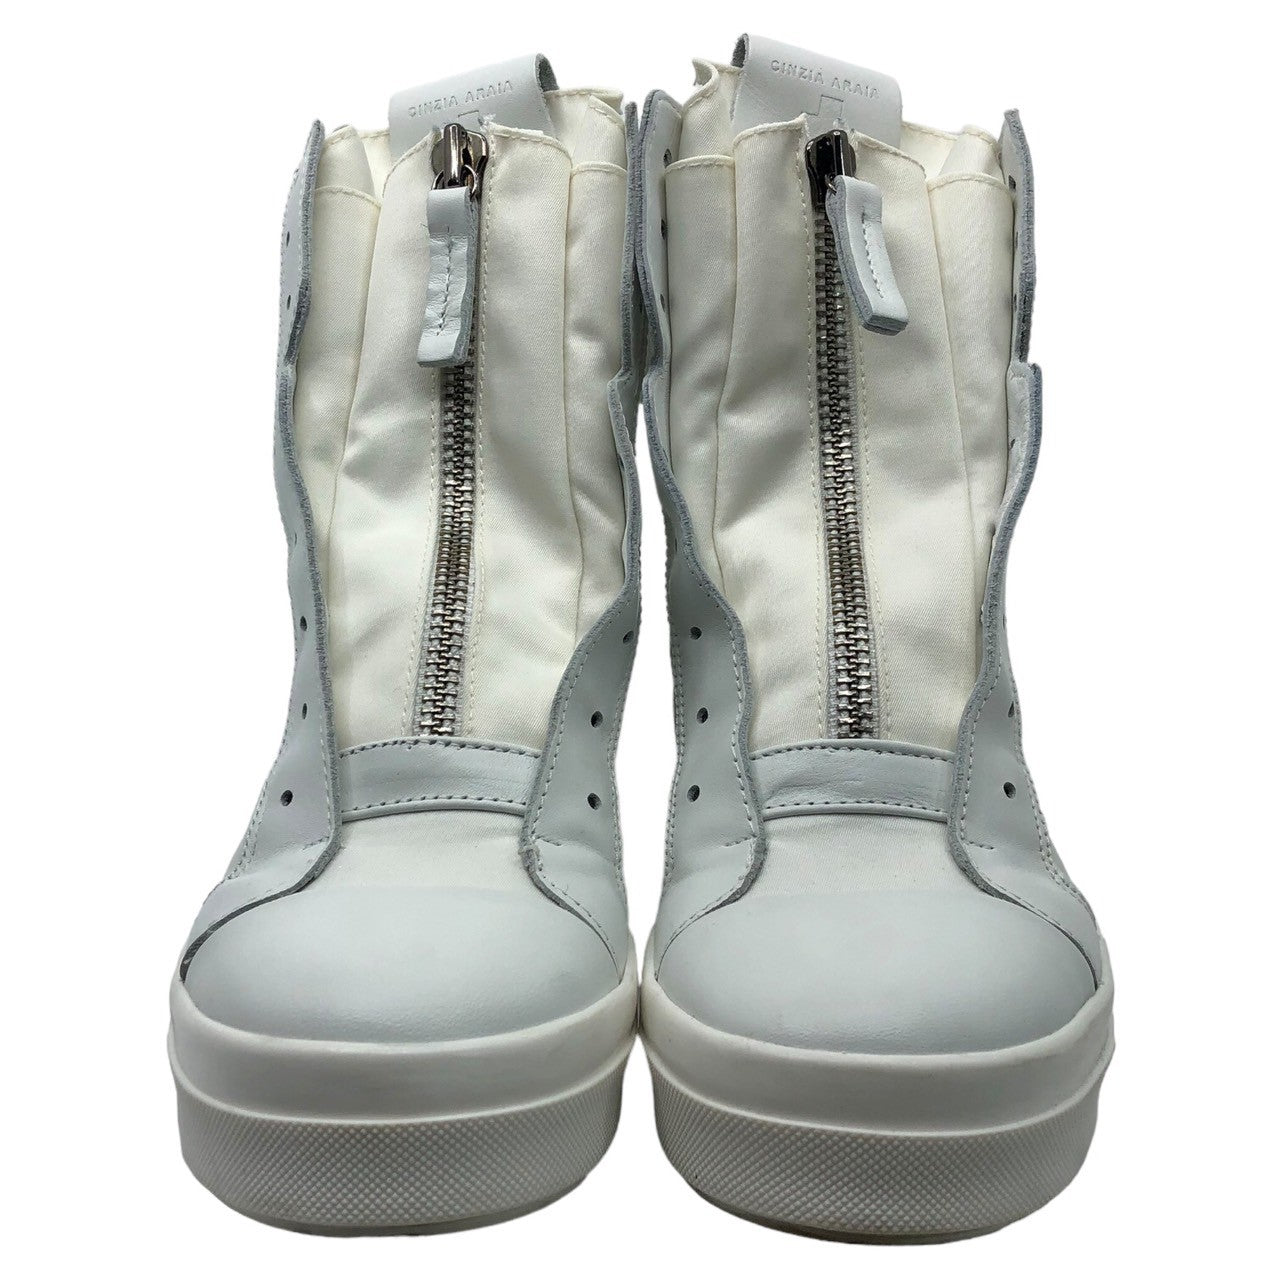 CINZIA ARAIA(チンツィアアライア) center zip sneakers センタージップ スニーカー 38(24.0cm) ホワイト 110-W-LYR-1-SK1